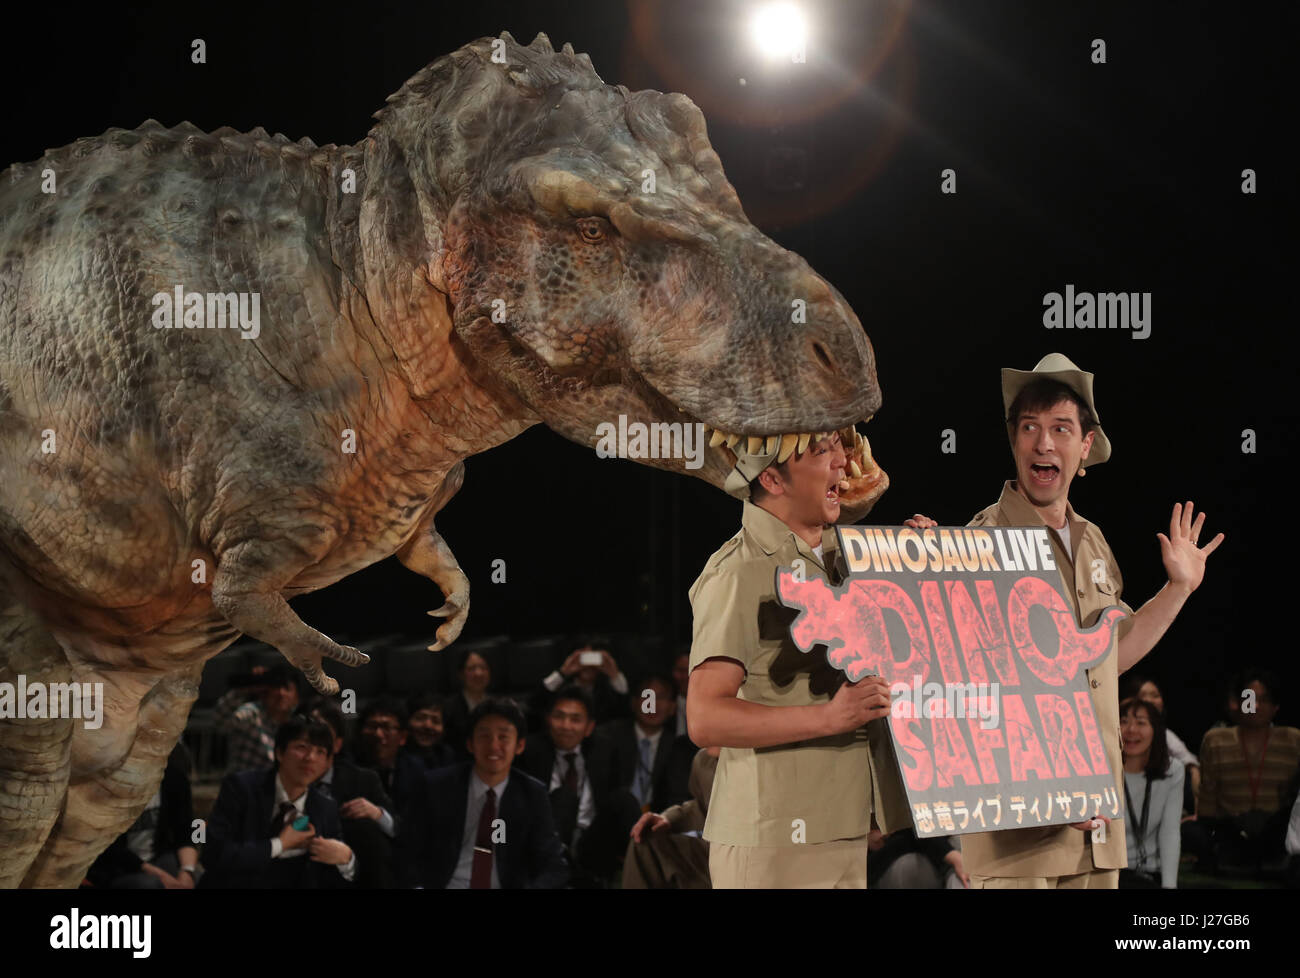 Tokio, Japón. 25 abr, 2017. Un actor vistiendo traje mecánico con forma de  dinosaurios 'Dino-tronics' muerde la cabeza de comediante japonés Makoto  Yoshida de 